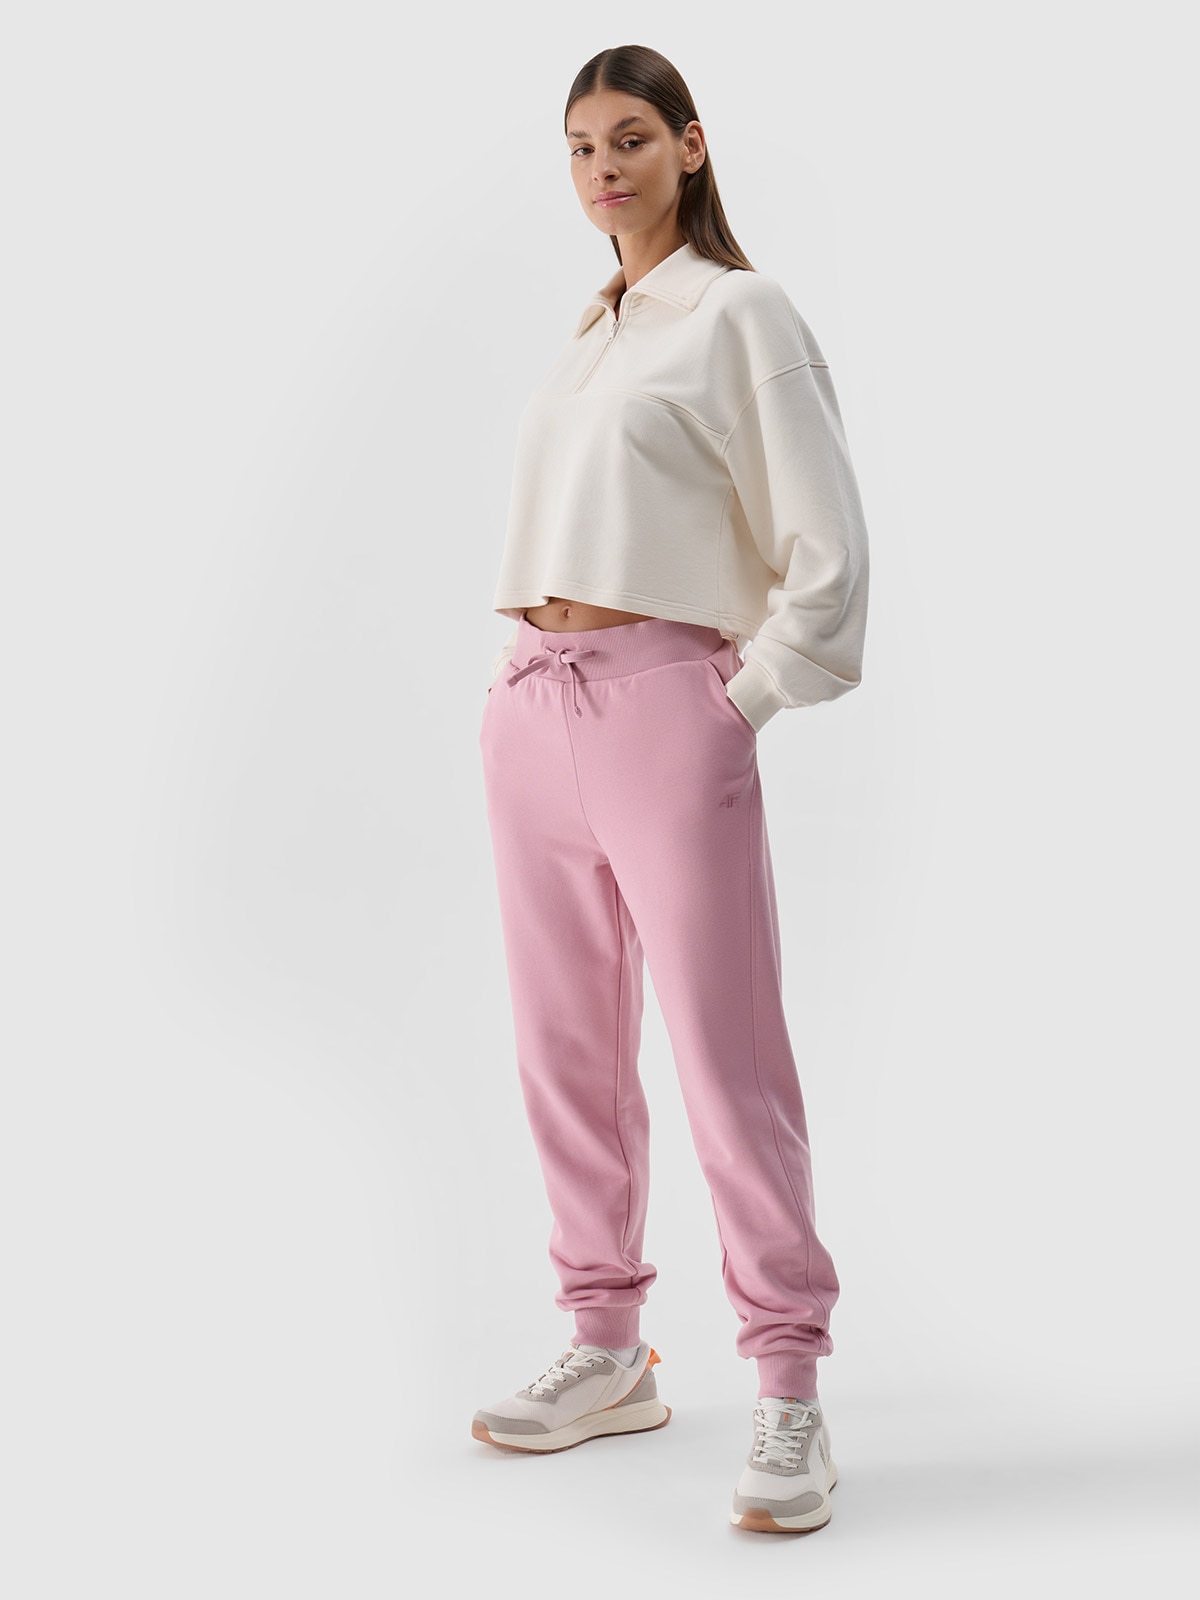 Pantaloni jogger de trening pentru femei - roz pudrat